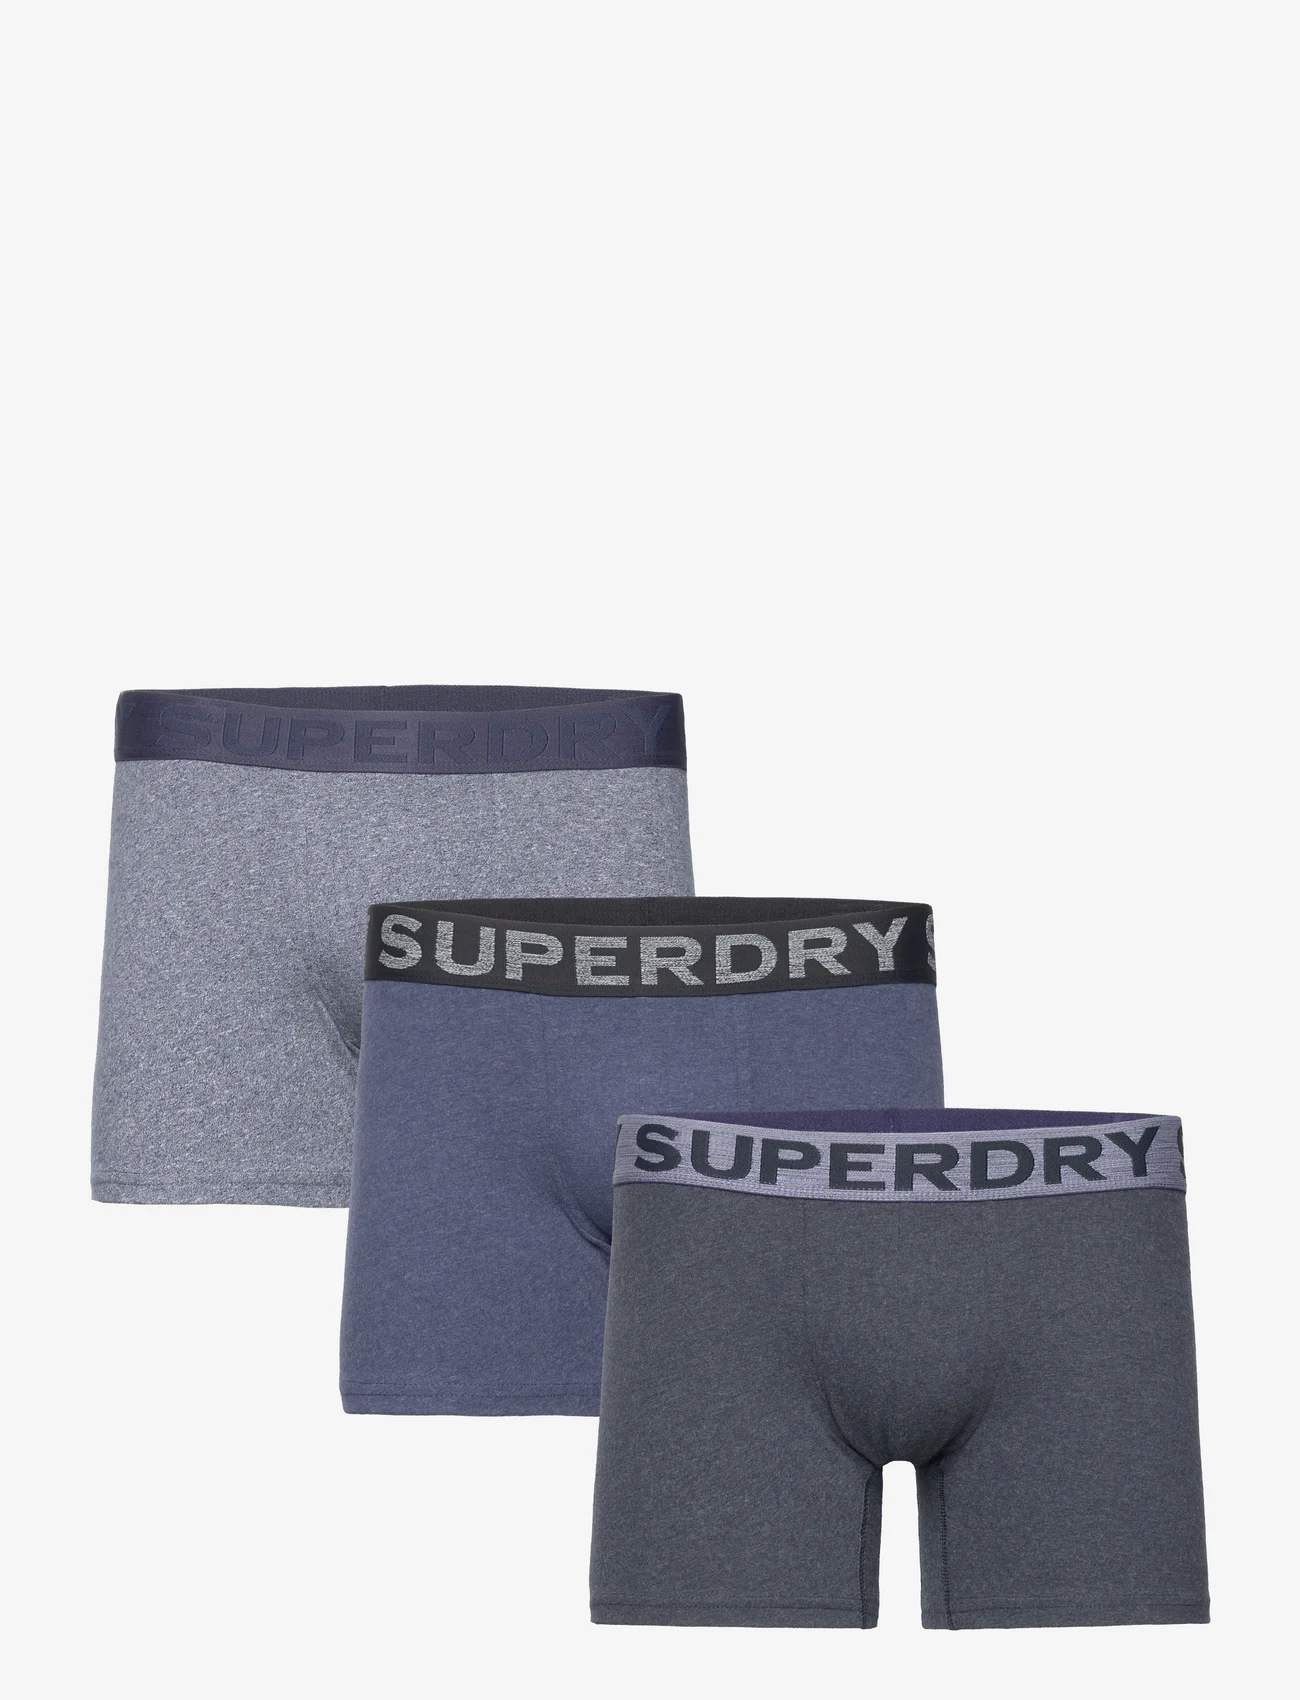 Superdry - BOXER TRIPLE PACK - die niedrigsten preise - frosted navy grit/dark indigo marl/navy - 0